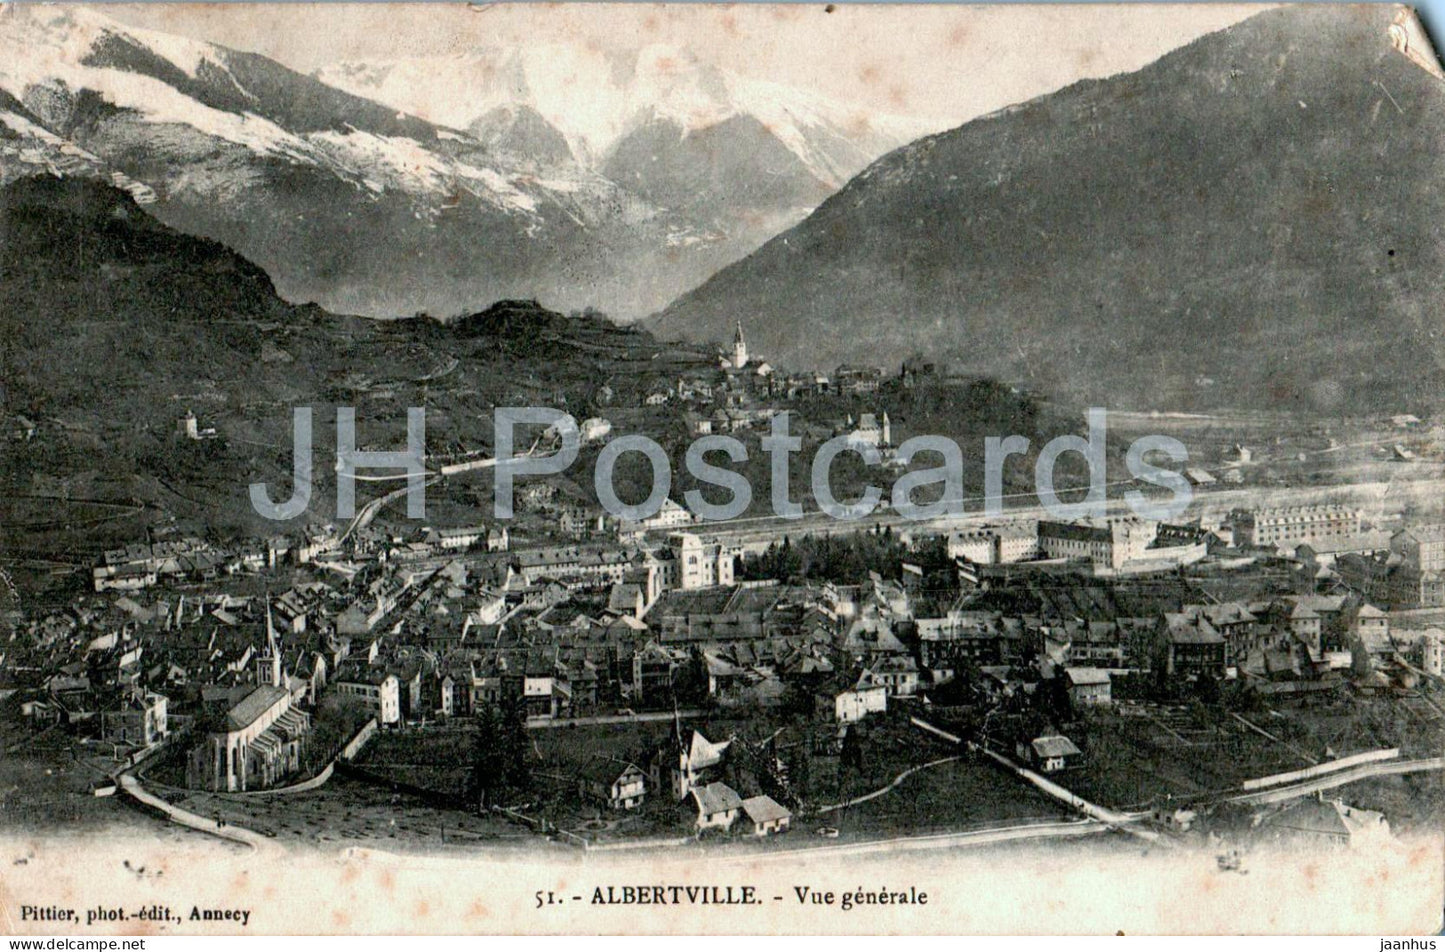 Albertville - Vue generale - 51 - old postcard - 1906 - France - used - JH Postcards